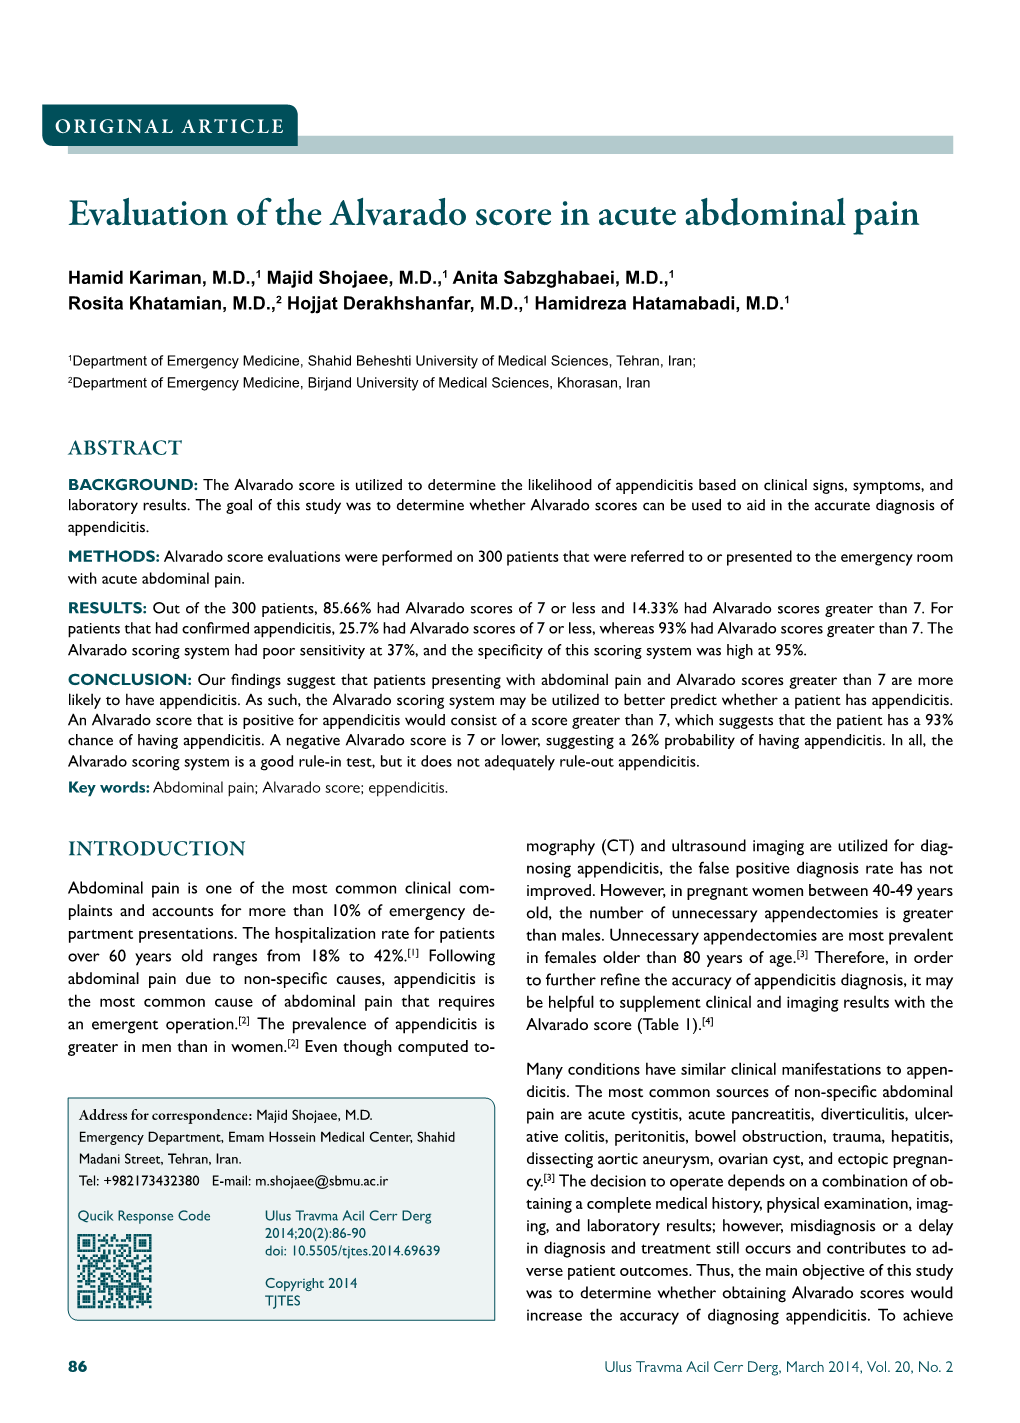 Evaluation of the Alvarado Score in Acute Abdominal Pain